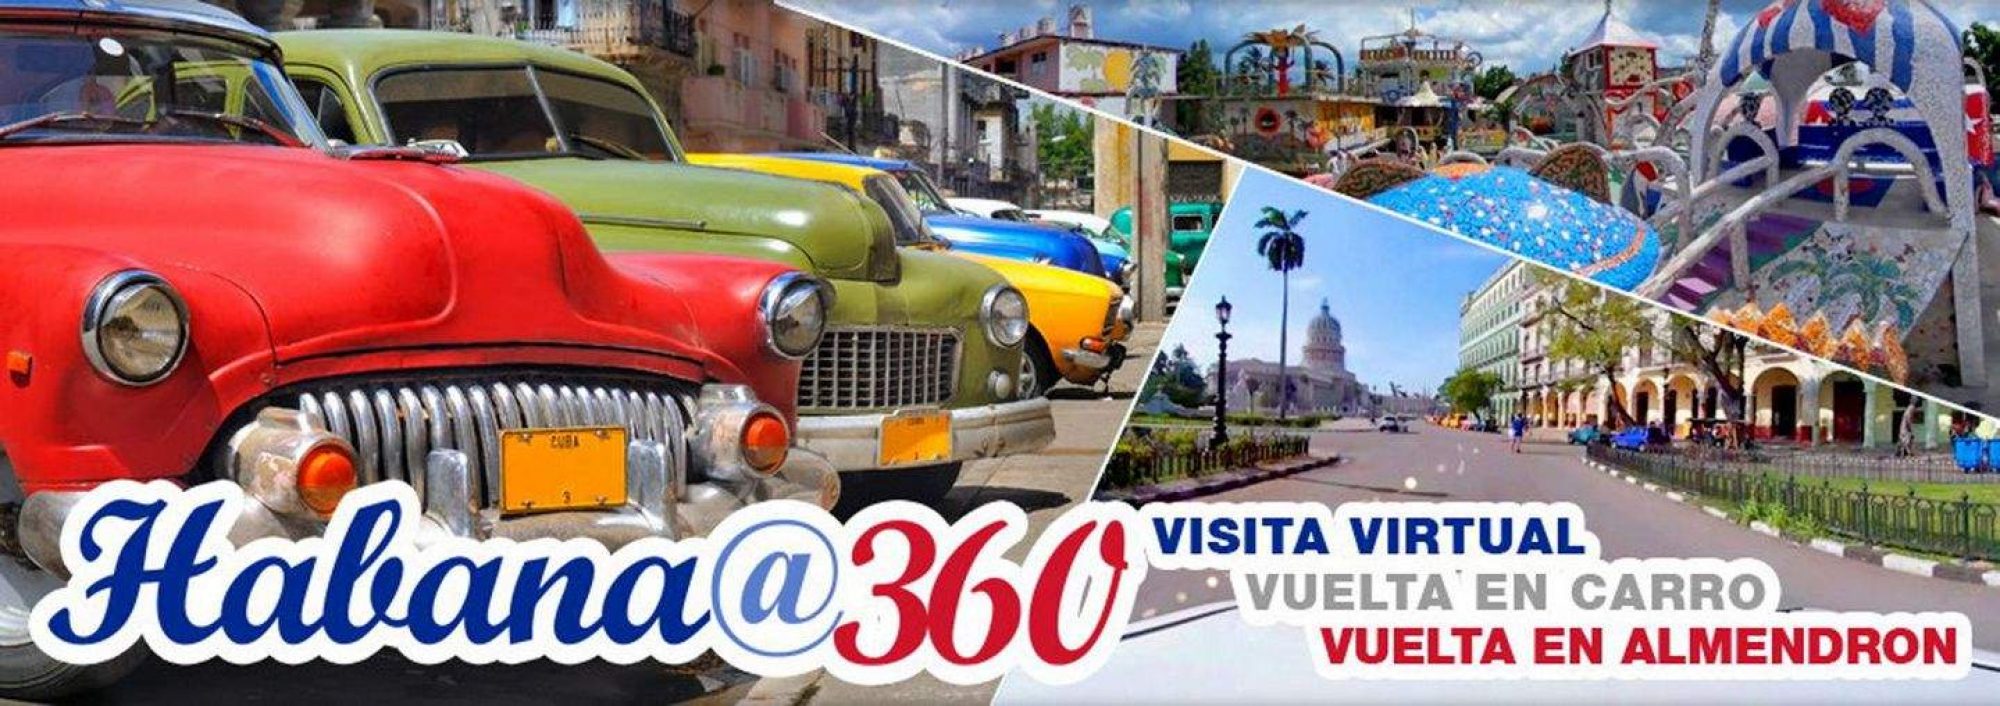 Habana 360 VR